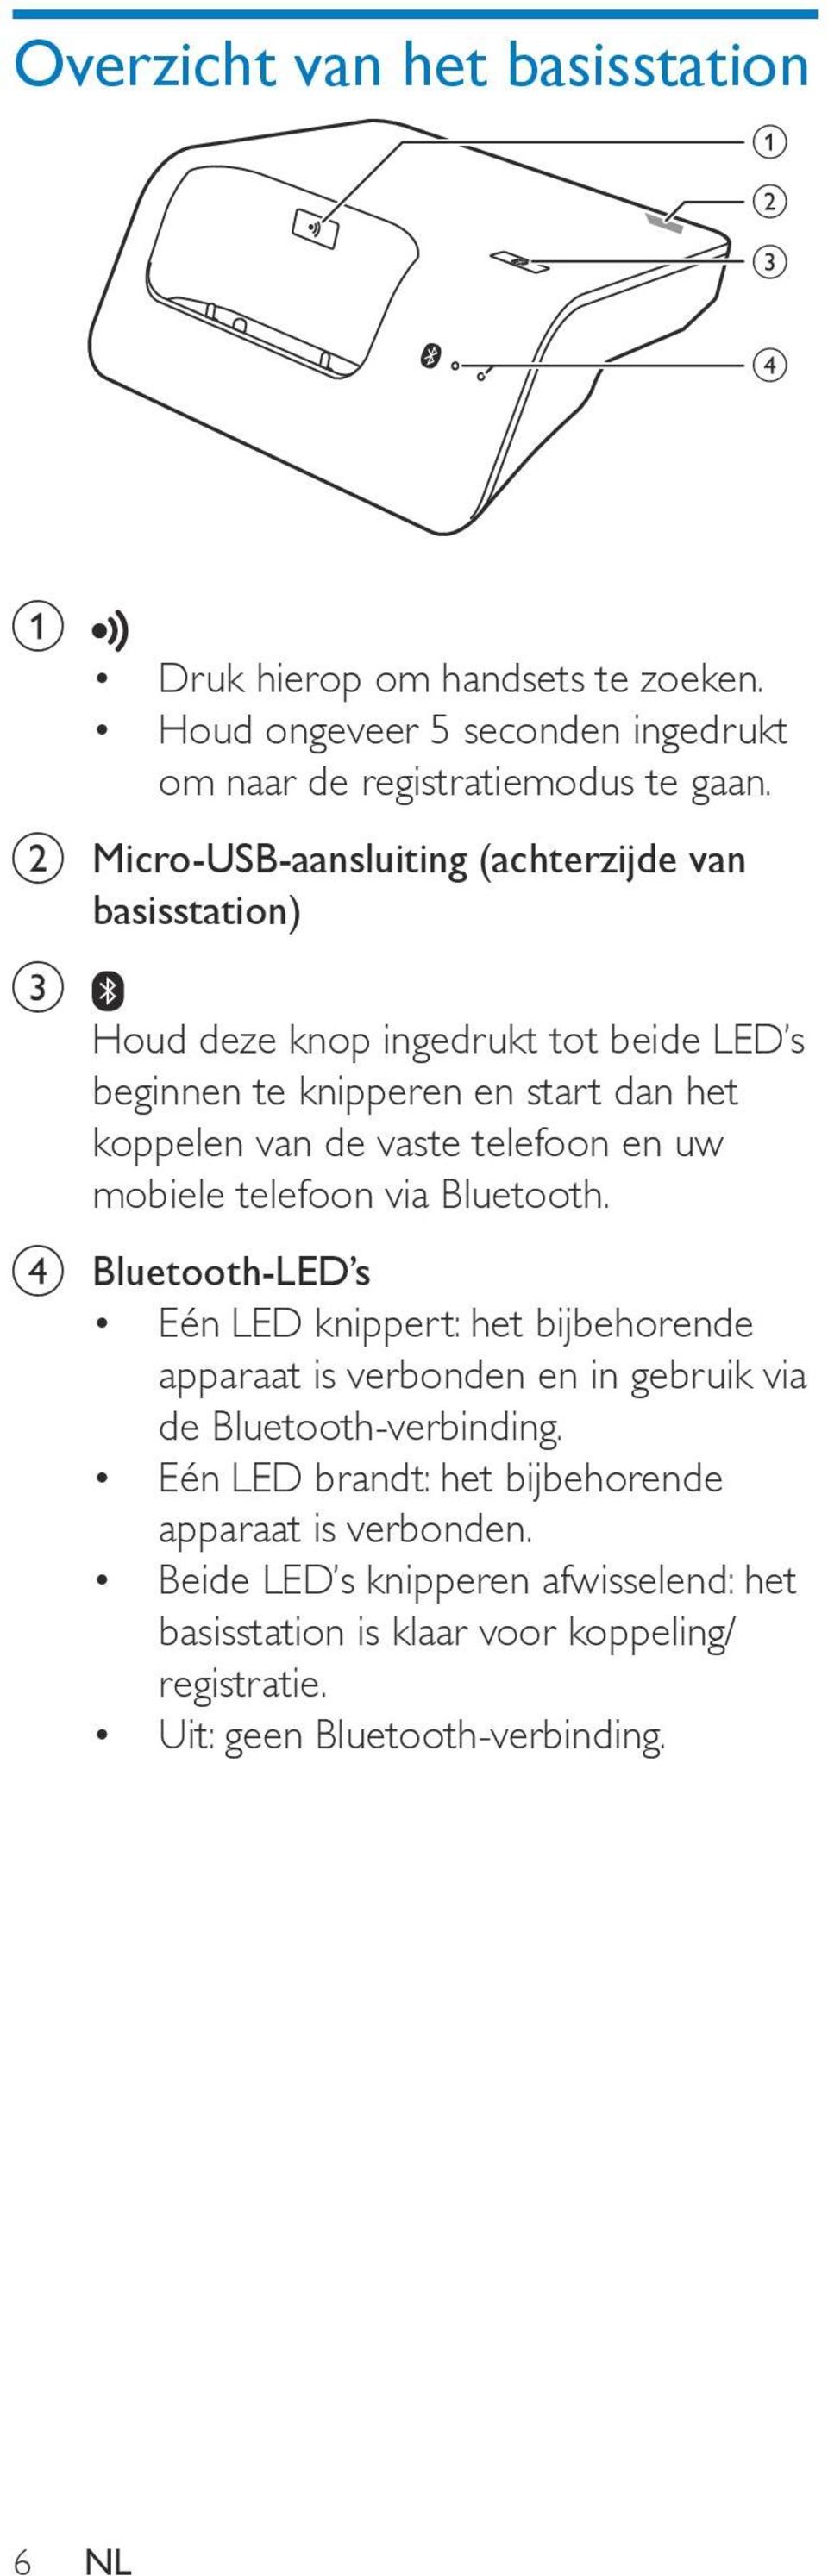 telefoon en uw mobiele telefoon via Bluetooth. d Bluetooth-LED s Eén LED knippert: het bijbehorende apparaat is verbonden en in gebruik via de Bluetooth-verbinding.